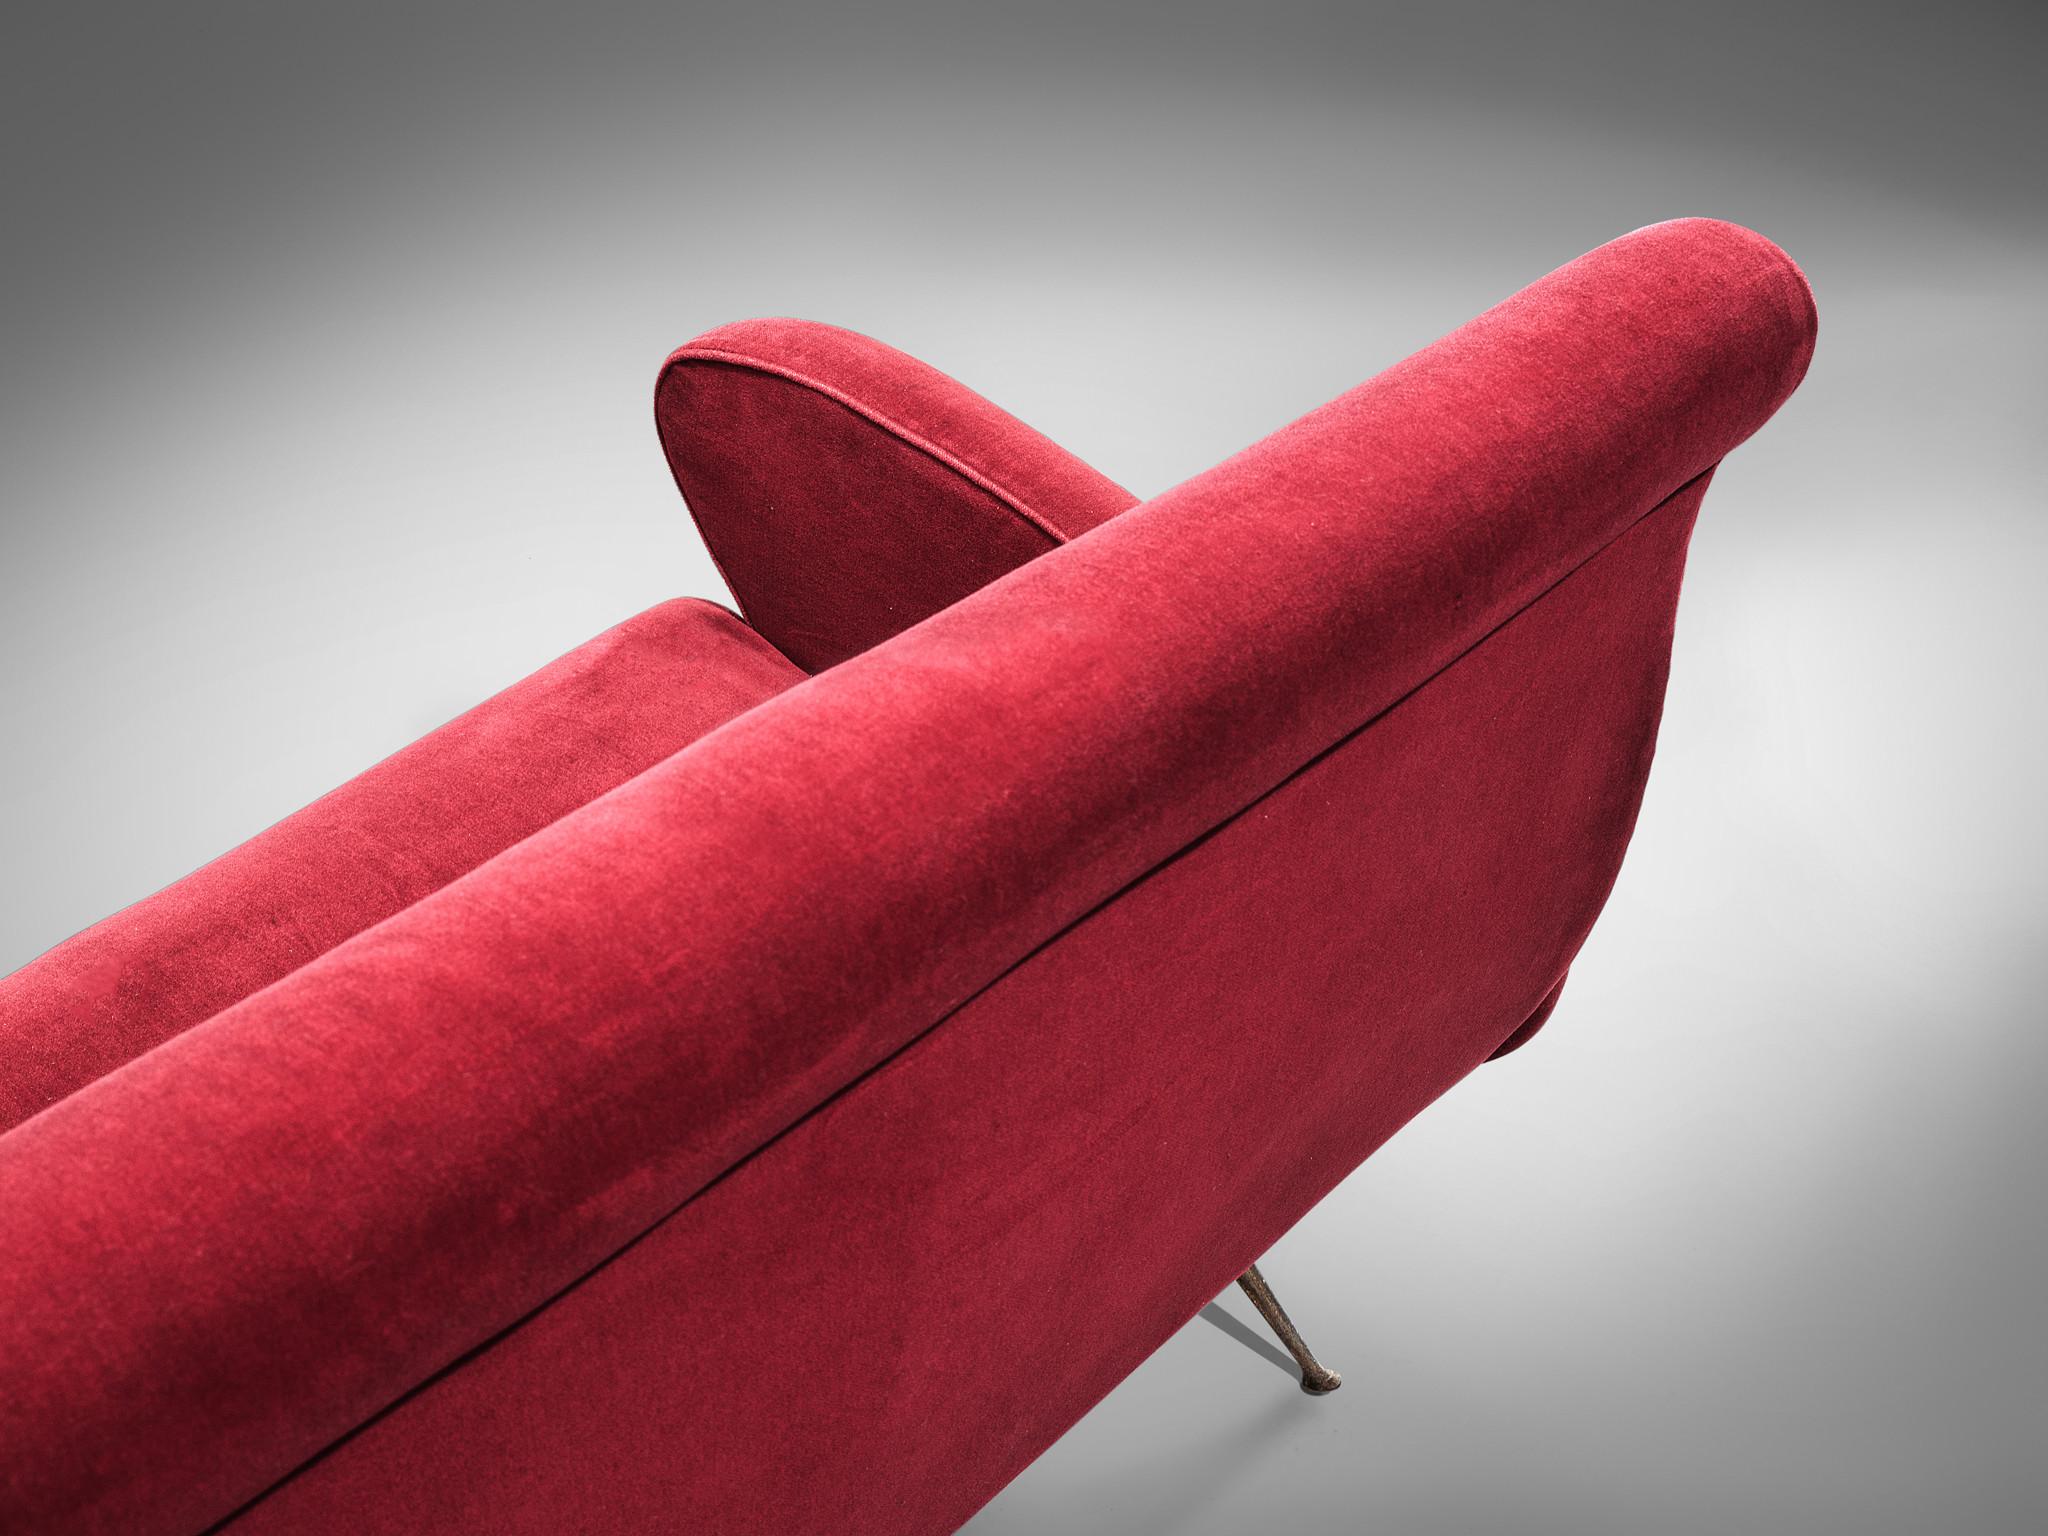 Sofa, roter Samt, Messing, Italien, 1950er Jahre.

Dieses Sofa ist eine Ikone des italienischen Designs aus den fünfziger Jahren. Organisch und skulptural ist das zweisitzige Sofa alles andere als minimalistisch. Ausgestattet mit den originalen